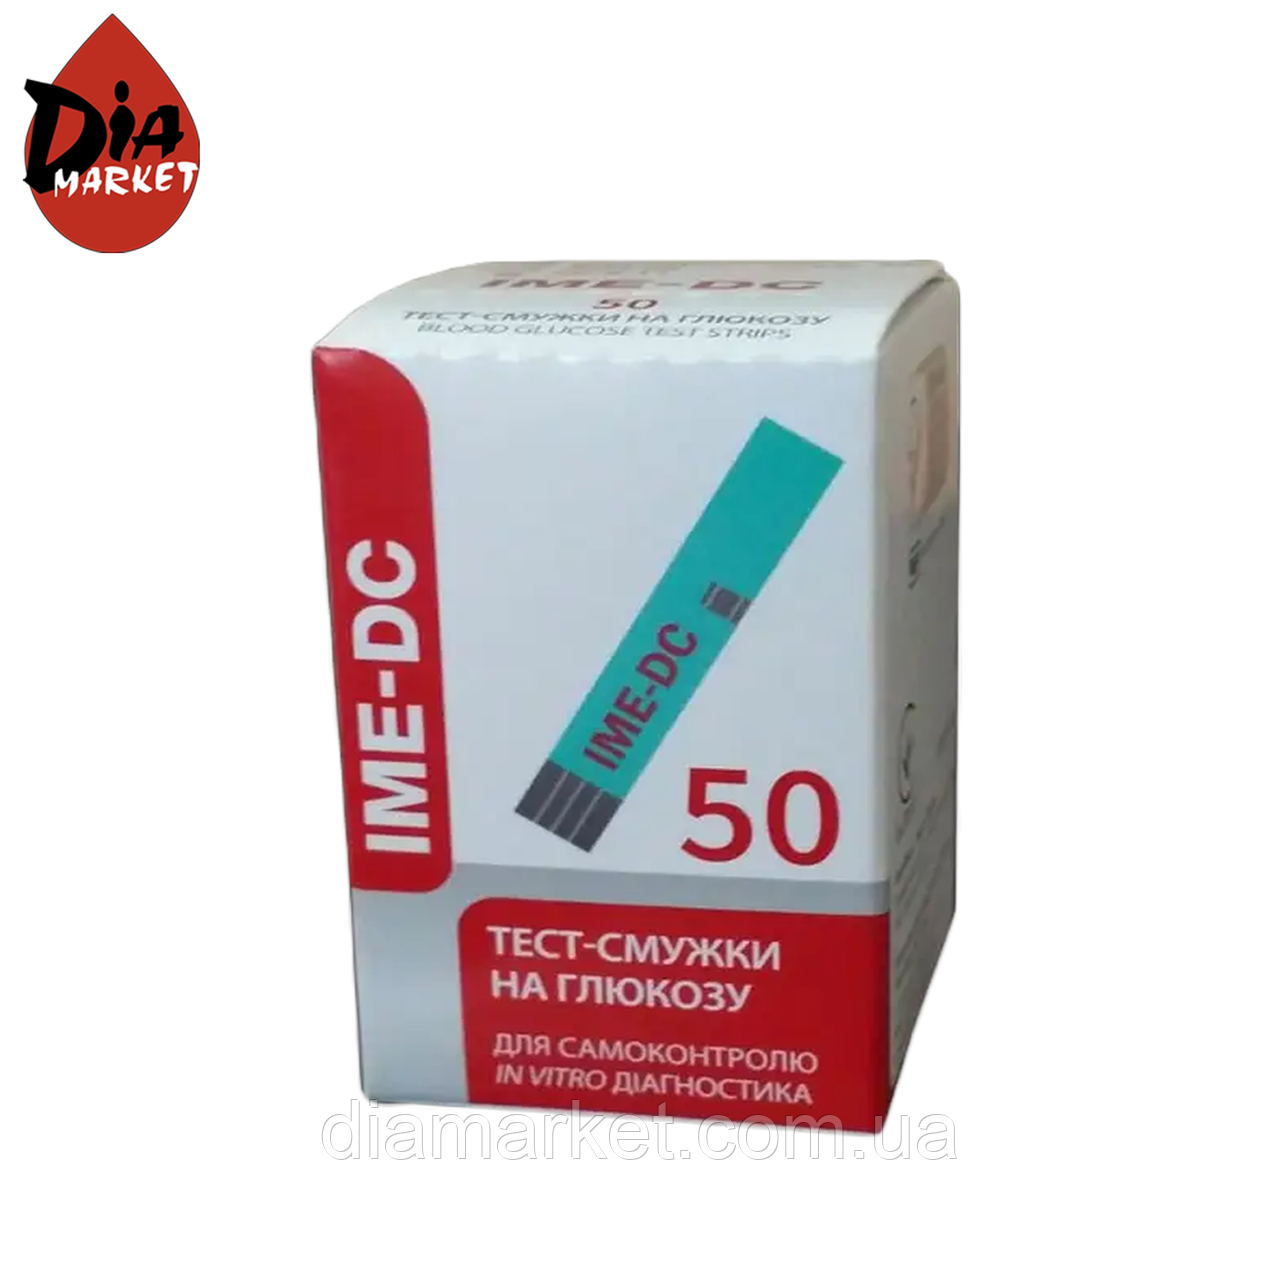 Тест-смужки IME-DC (Іме-Дісі) - 1 упаковка по 50 шт.